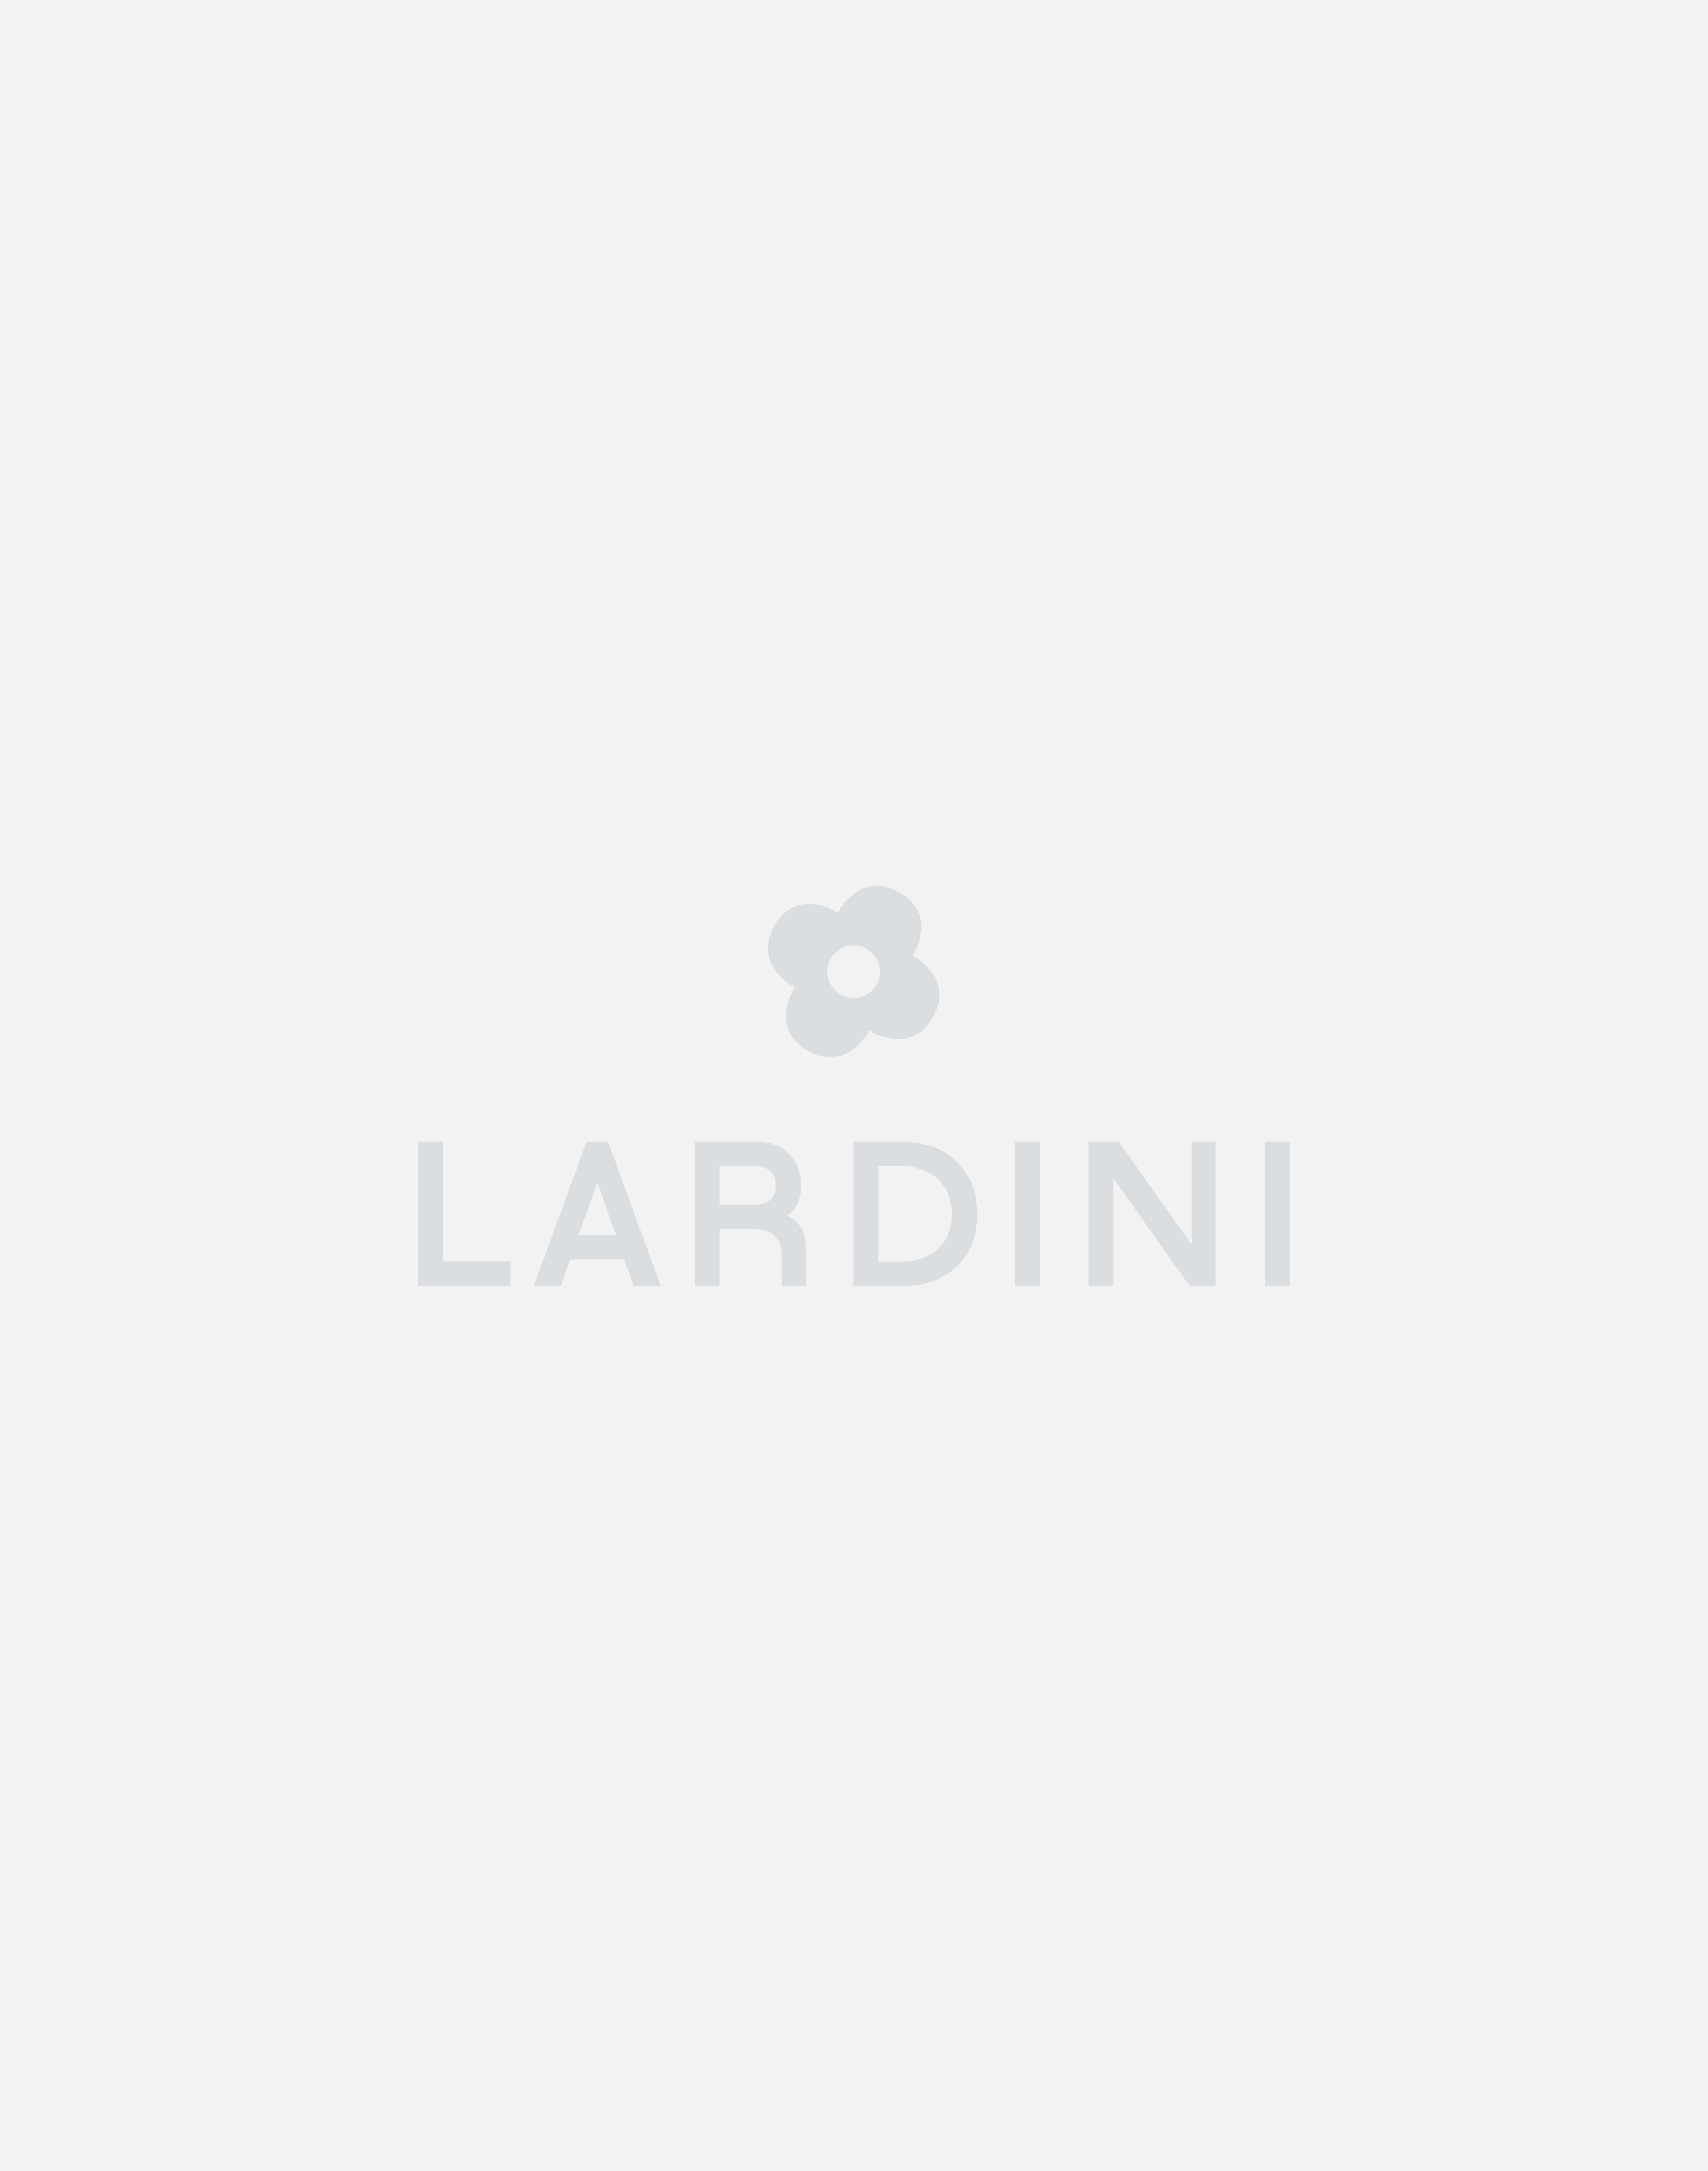 Cream knit jacket - Luigi Lardini capsule 3